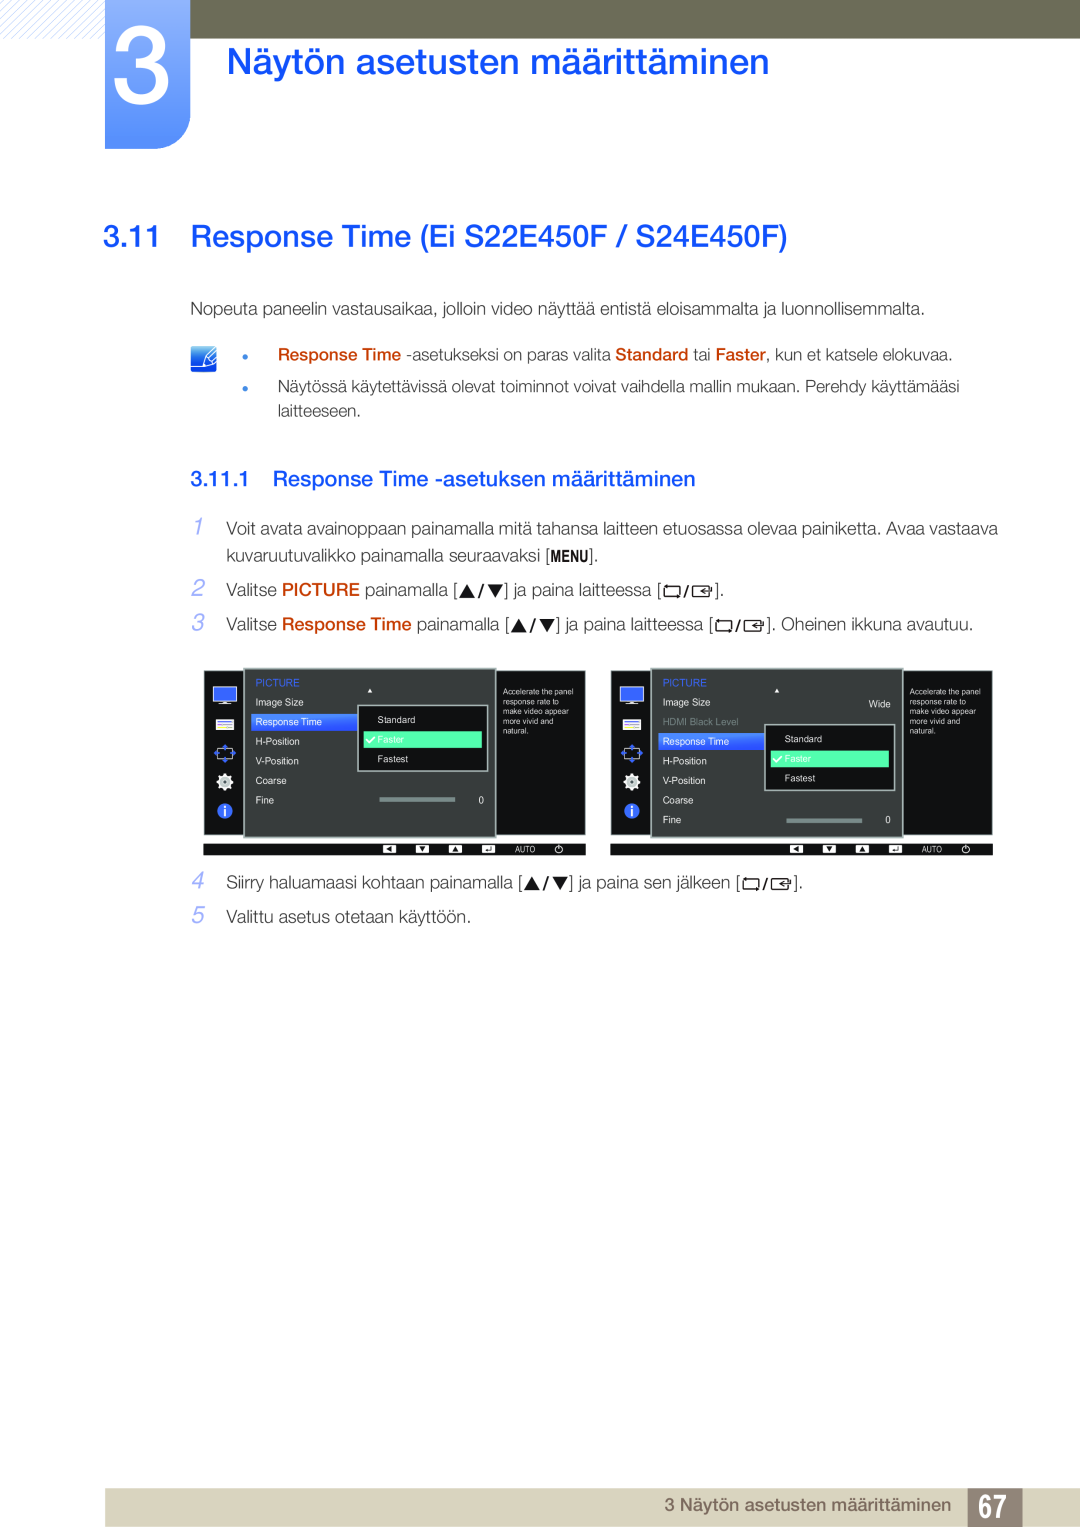 Samsung LS24E45UDLC/XE, LS23E65UDC/EN manual Response Time Ei S22E450F / S24E450F, Response Time -asetuksen määrittäminen 